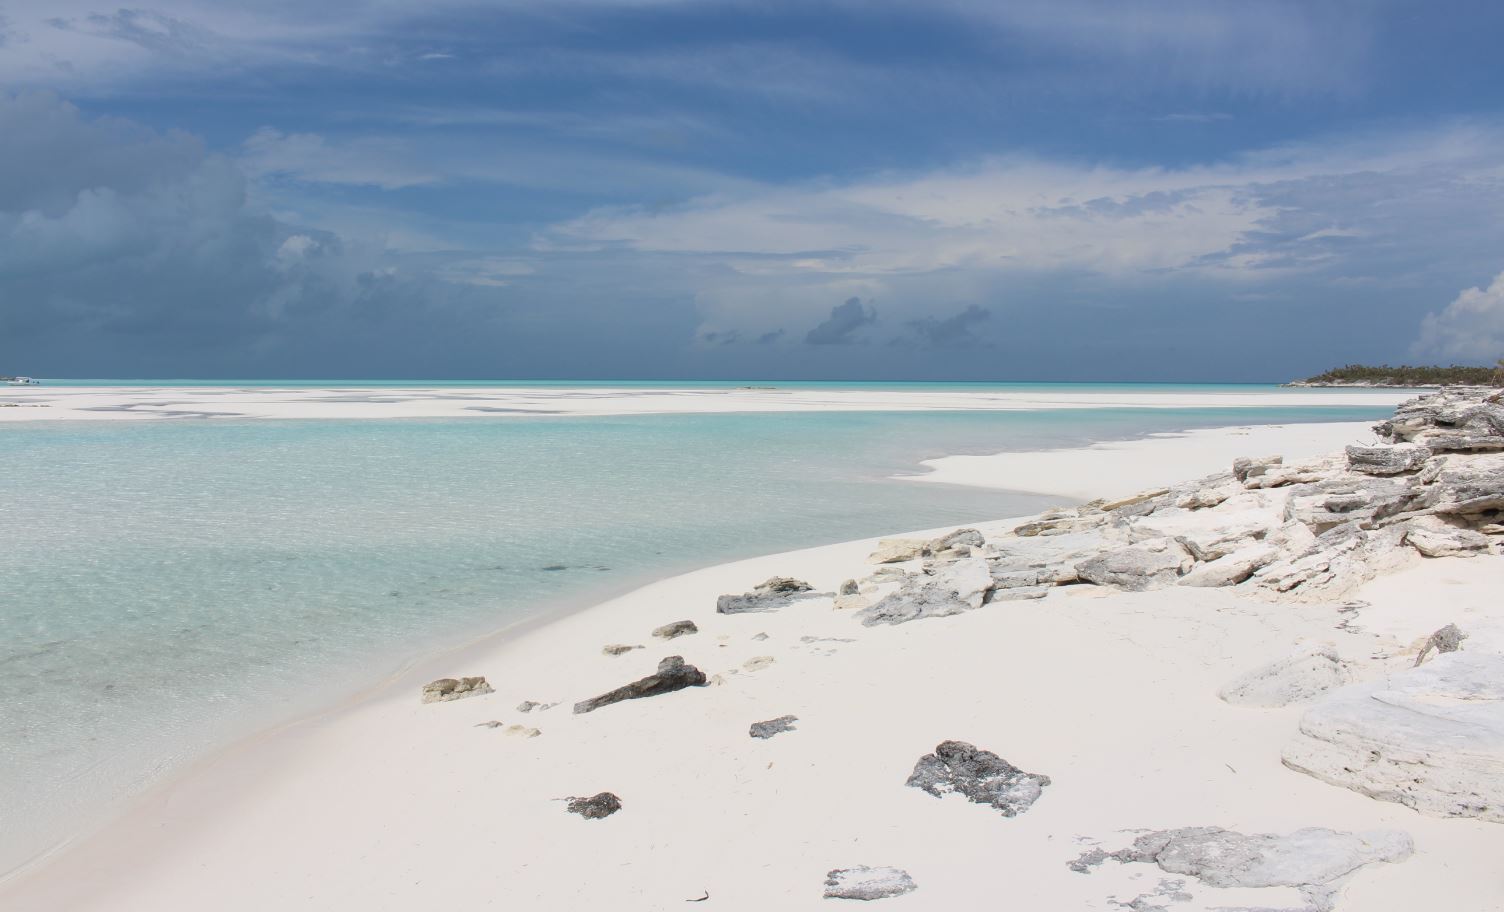 Bancos de areia, Sandy Cay, Exumas, Bahamas. Autor e Copyright Marco Ramerini..